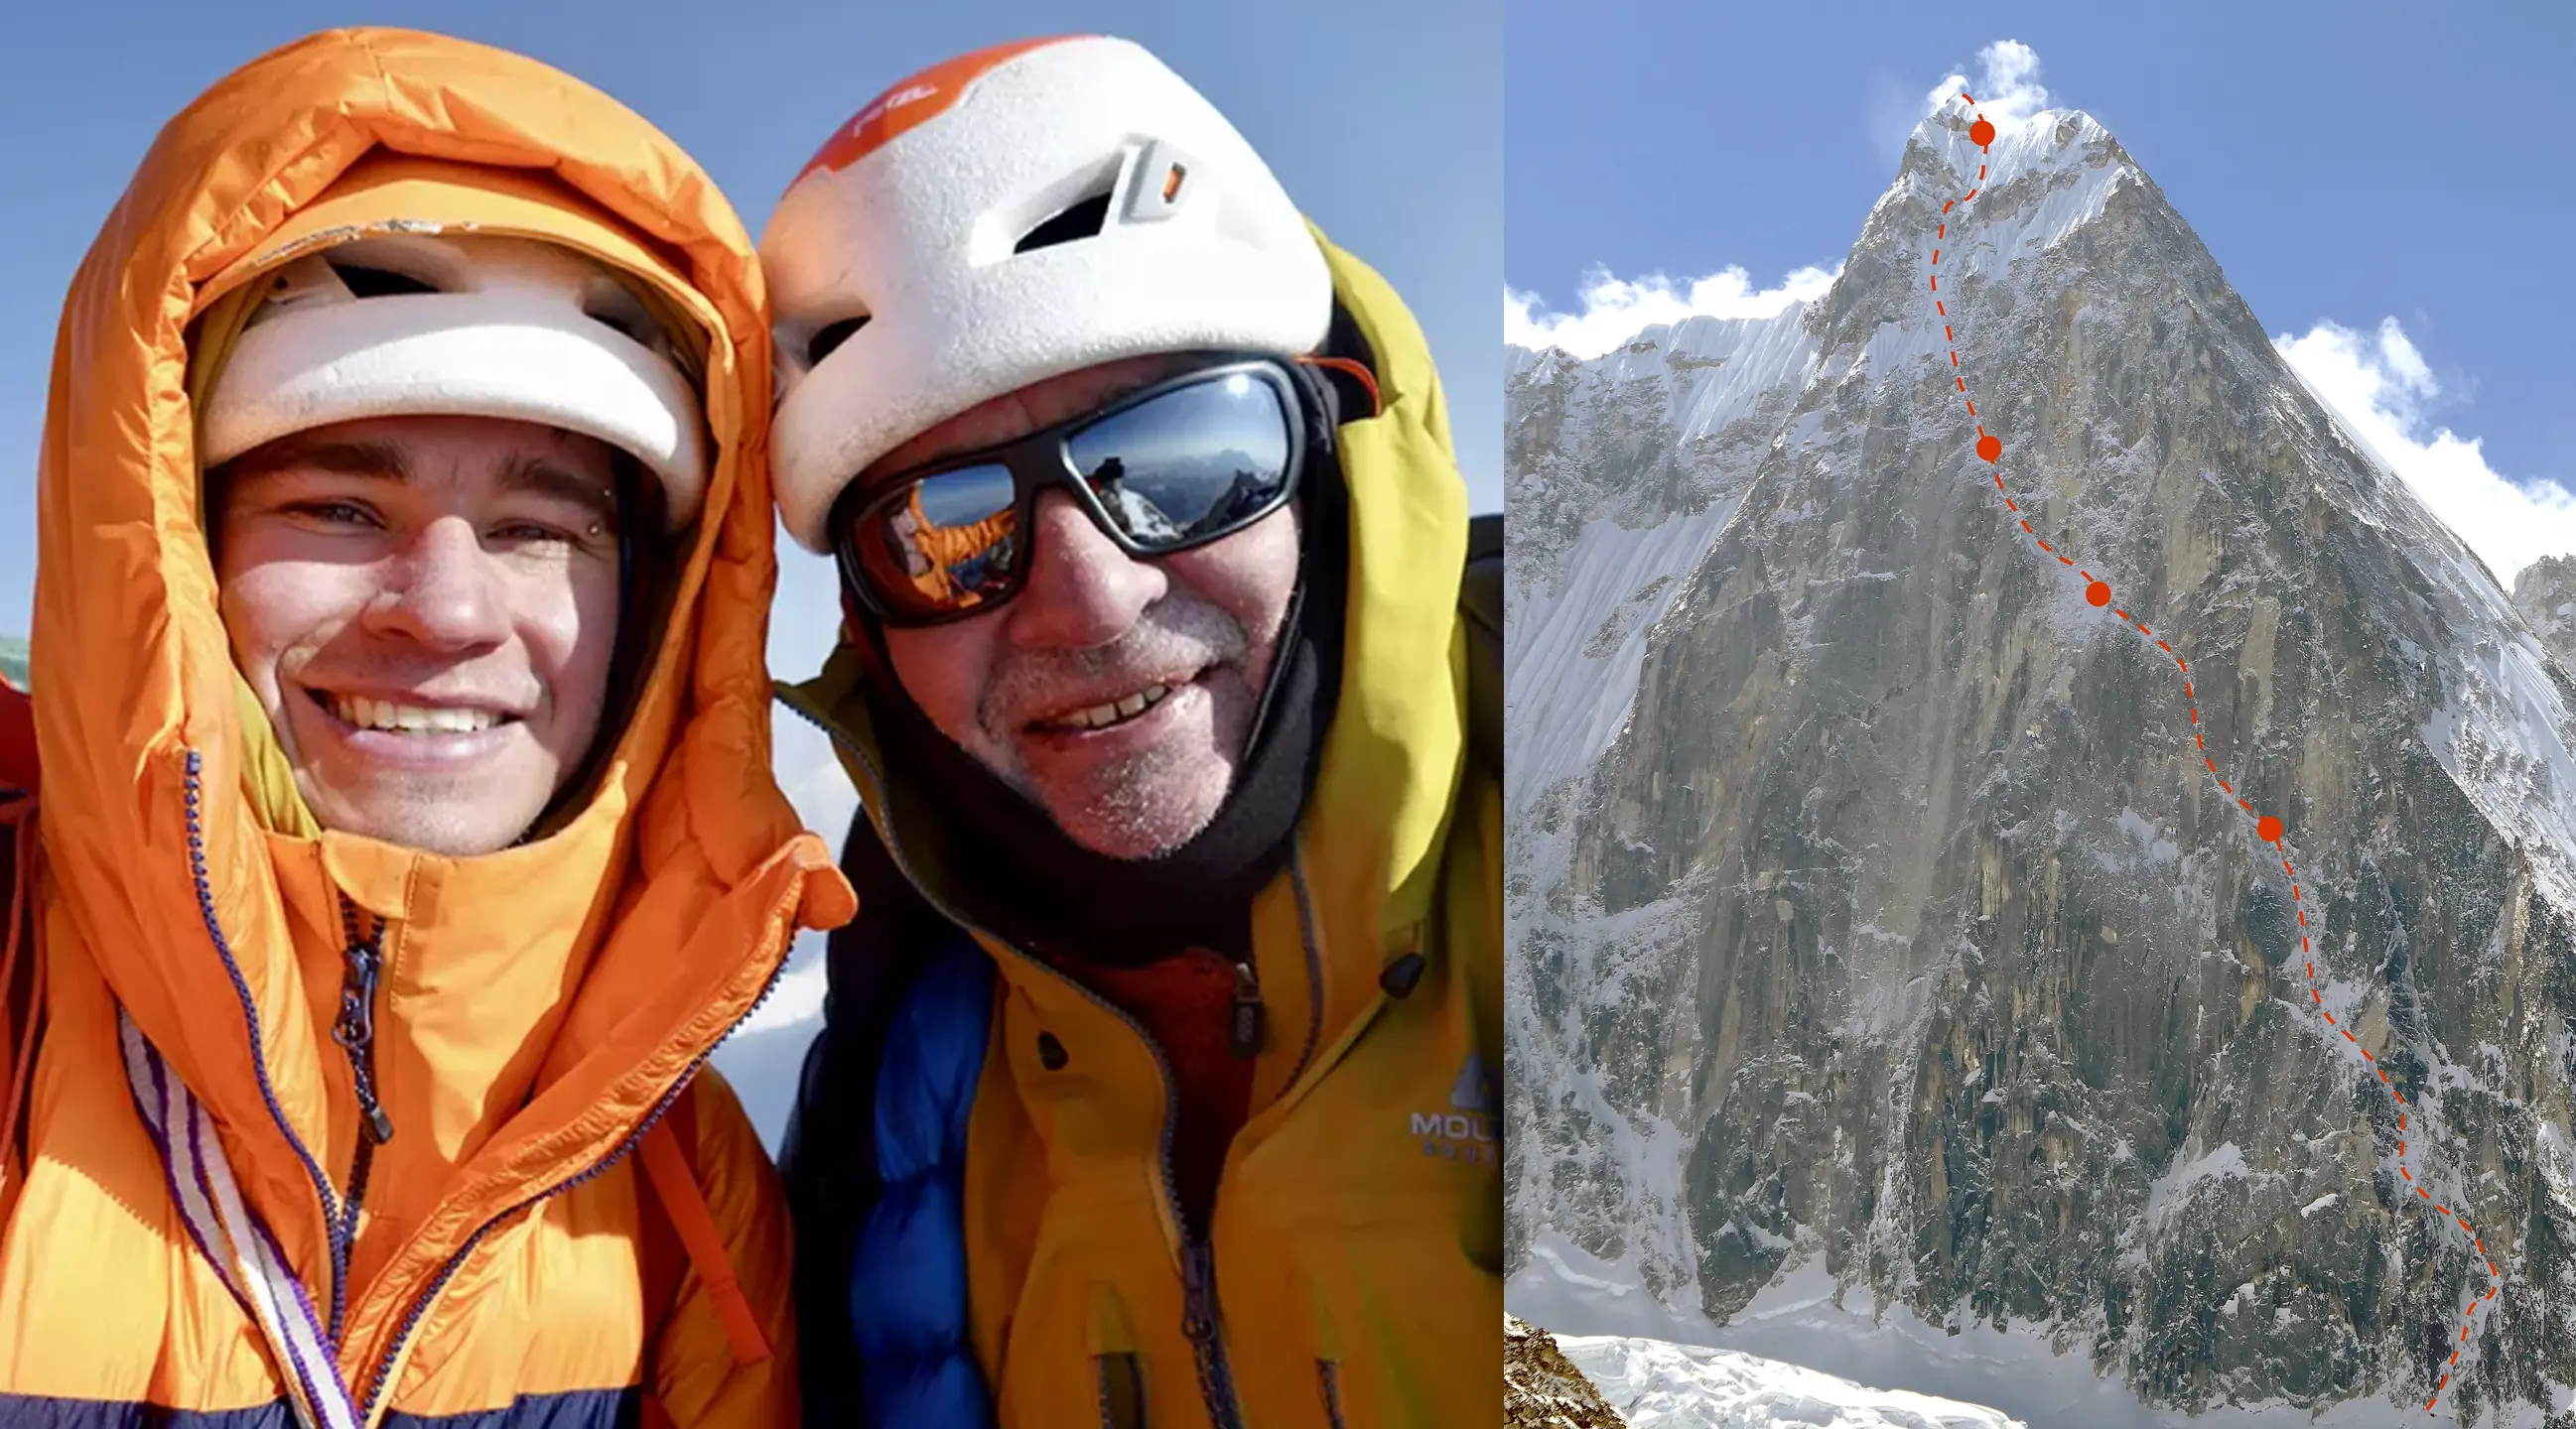 Пол Рамсден (Paul Ramsden) та Тім Міллер (Tim Miller). Маршрут під назвою "The Phantom Line" (1,300м, ED) проходить по північній стіні гори  Джугал Спайр (Jugal Spire / Dorje Lhakpa II, 6563 метрів) у Непалі